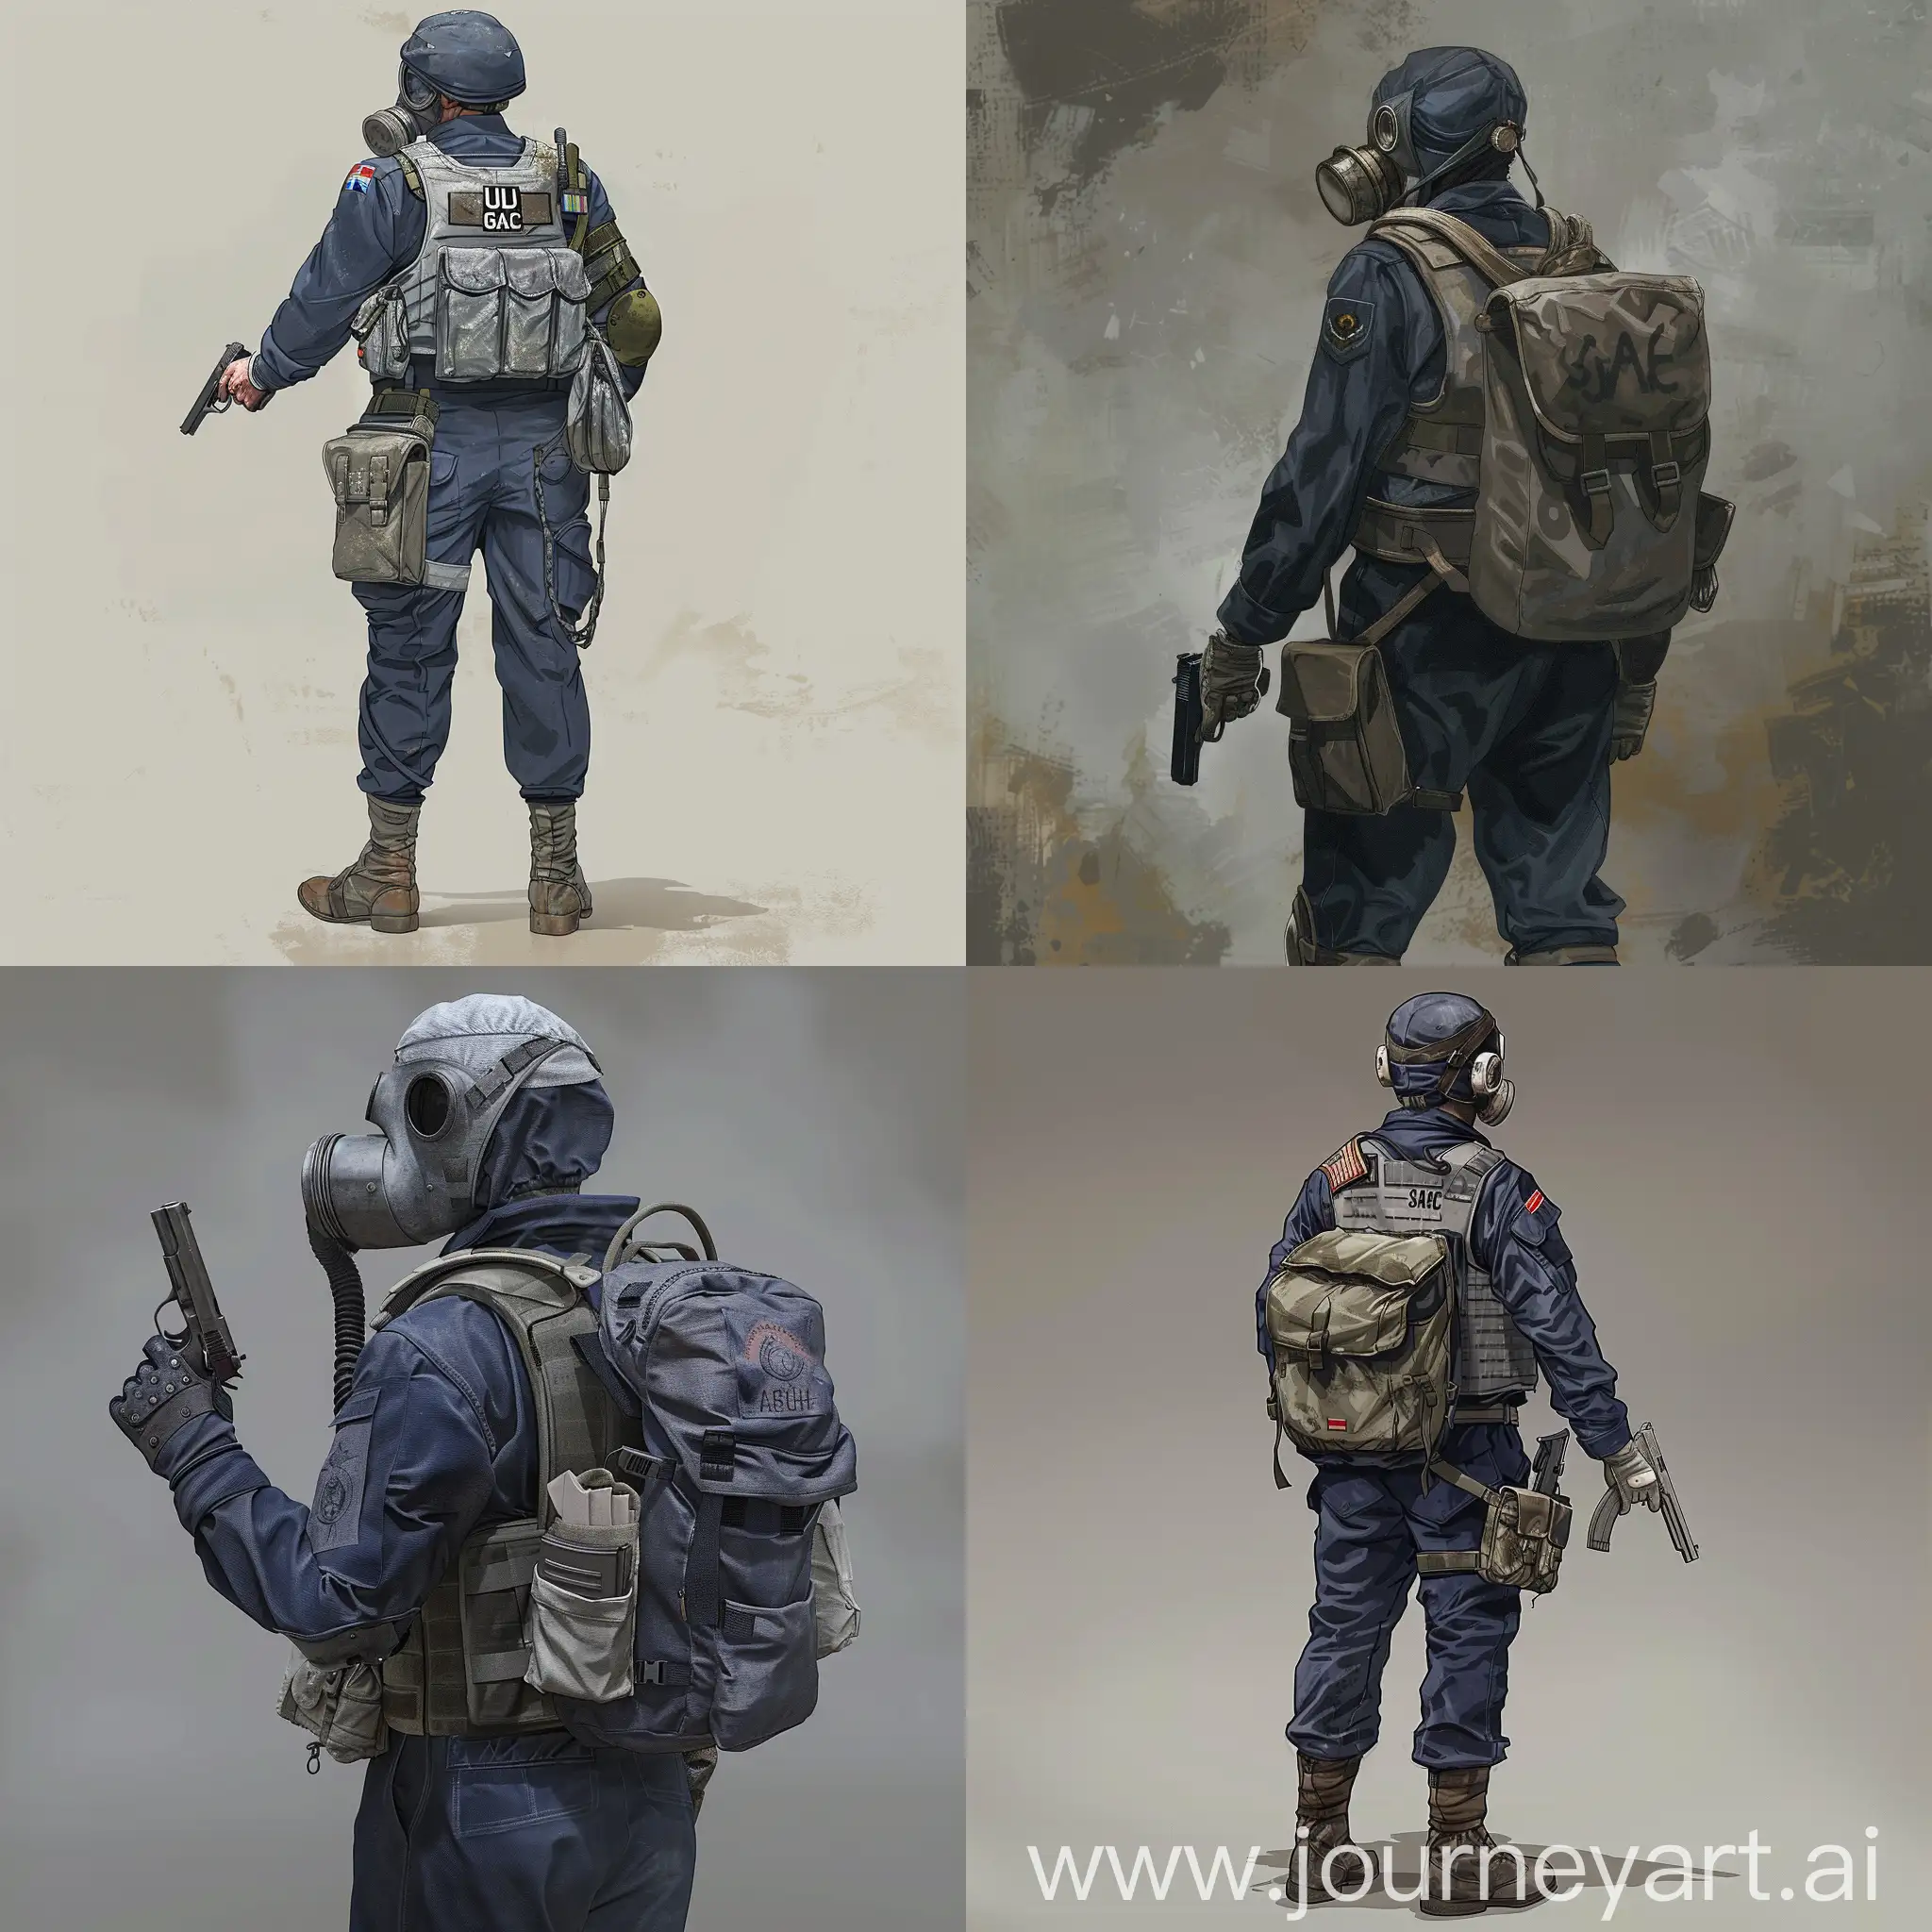 British-SAS-Soldier-in-Dark-Blue-Uniform-with-Gas-Mask-and-Pistol